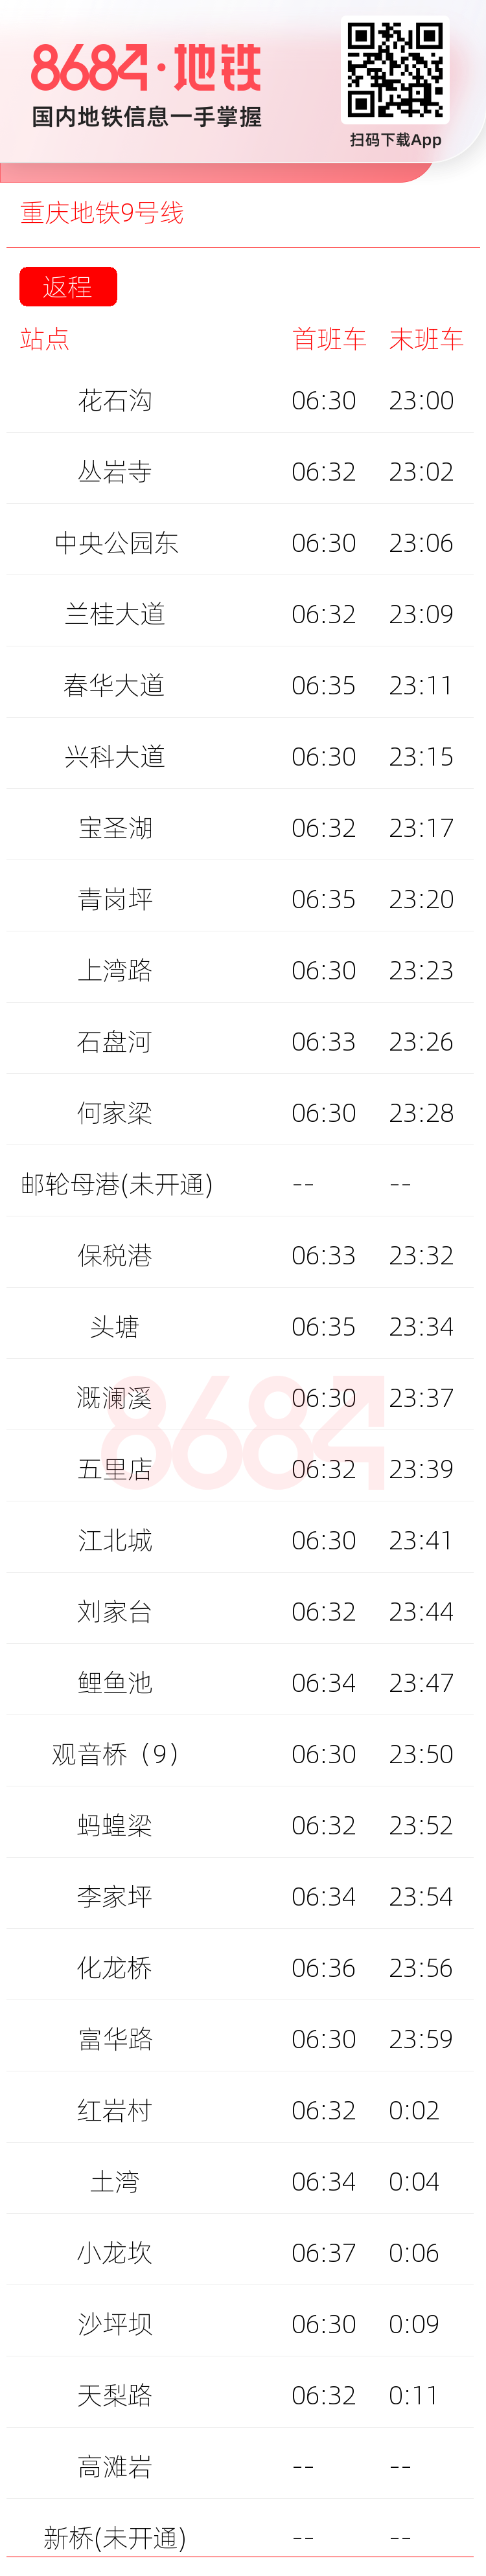 重庆地铁9号线运营时间表